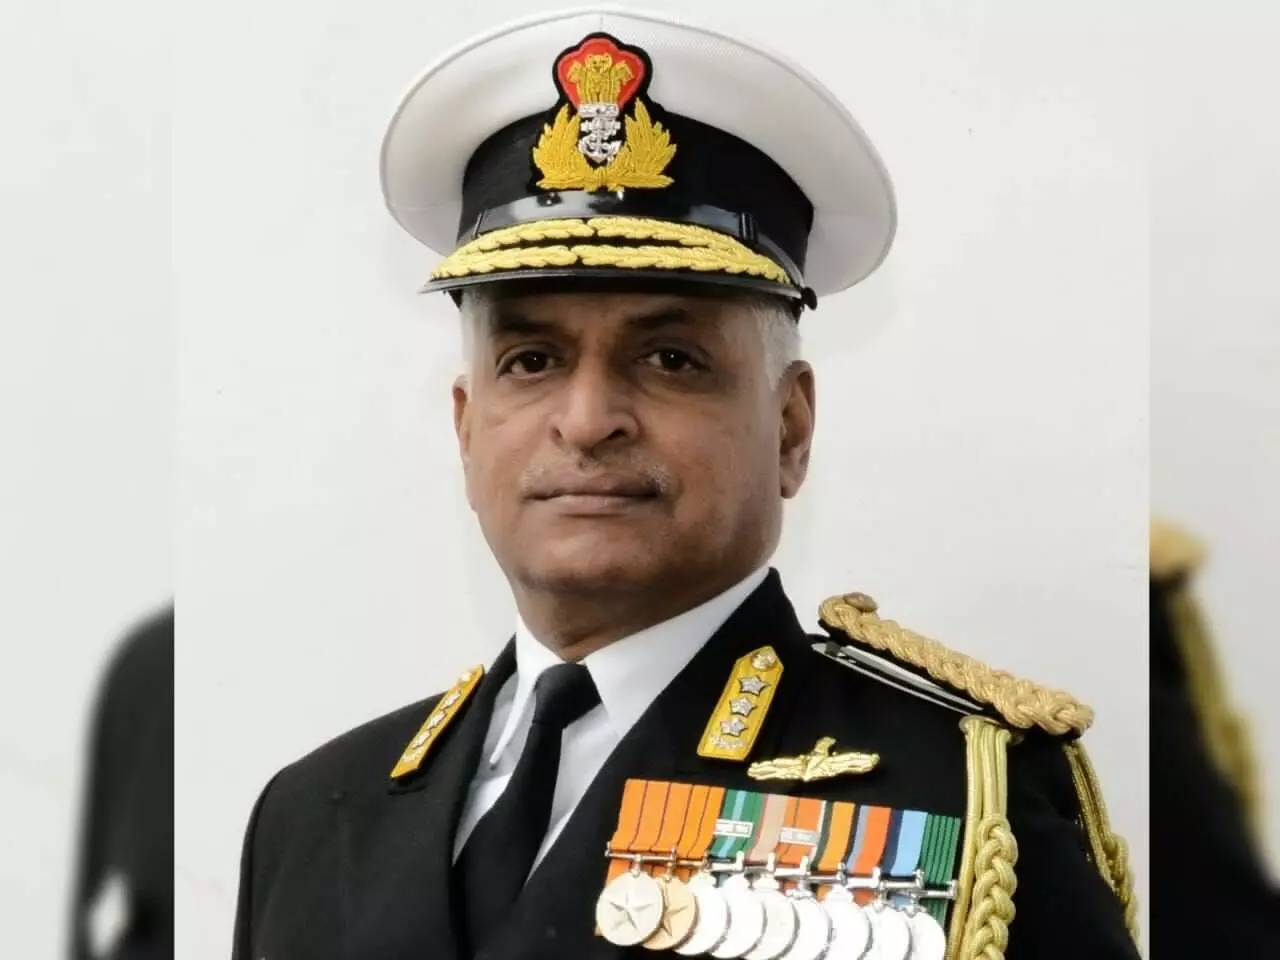 नौसेना के पूर्व वाइस चीफ वाइस एडमिरल जी अशोक कुमार को बनाया गया राष्ट्रीय समुद्री सुरक्षा का पहला समन्वयक